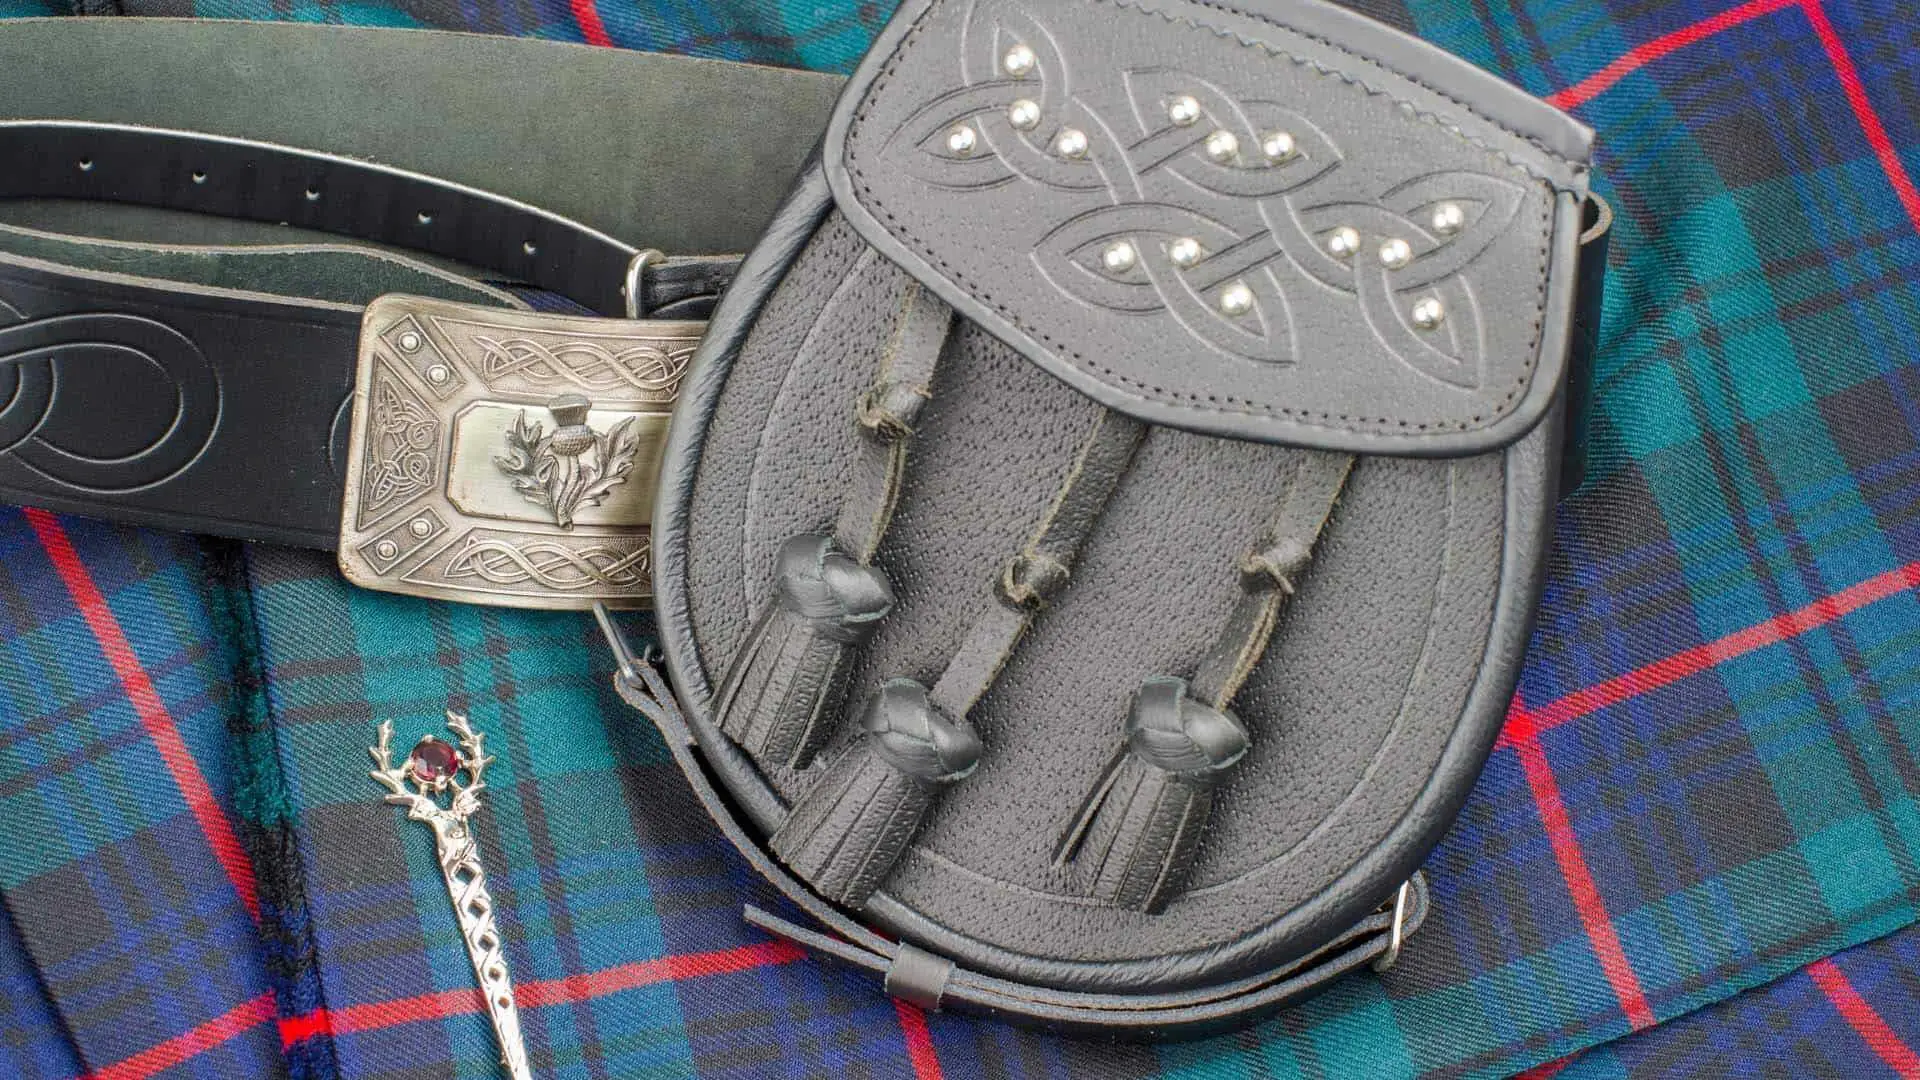 irish kilt accessories